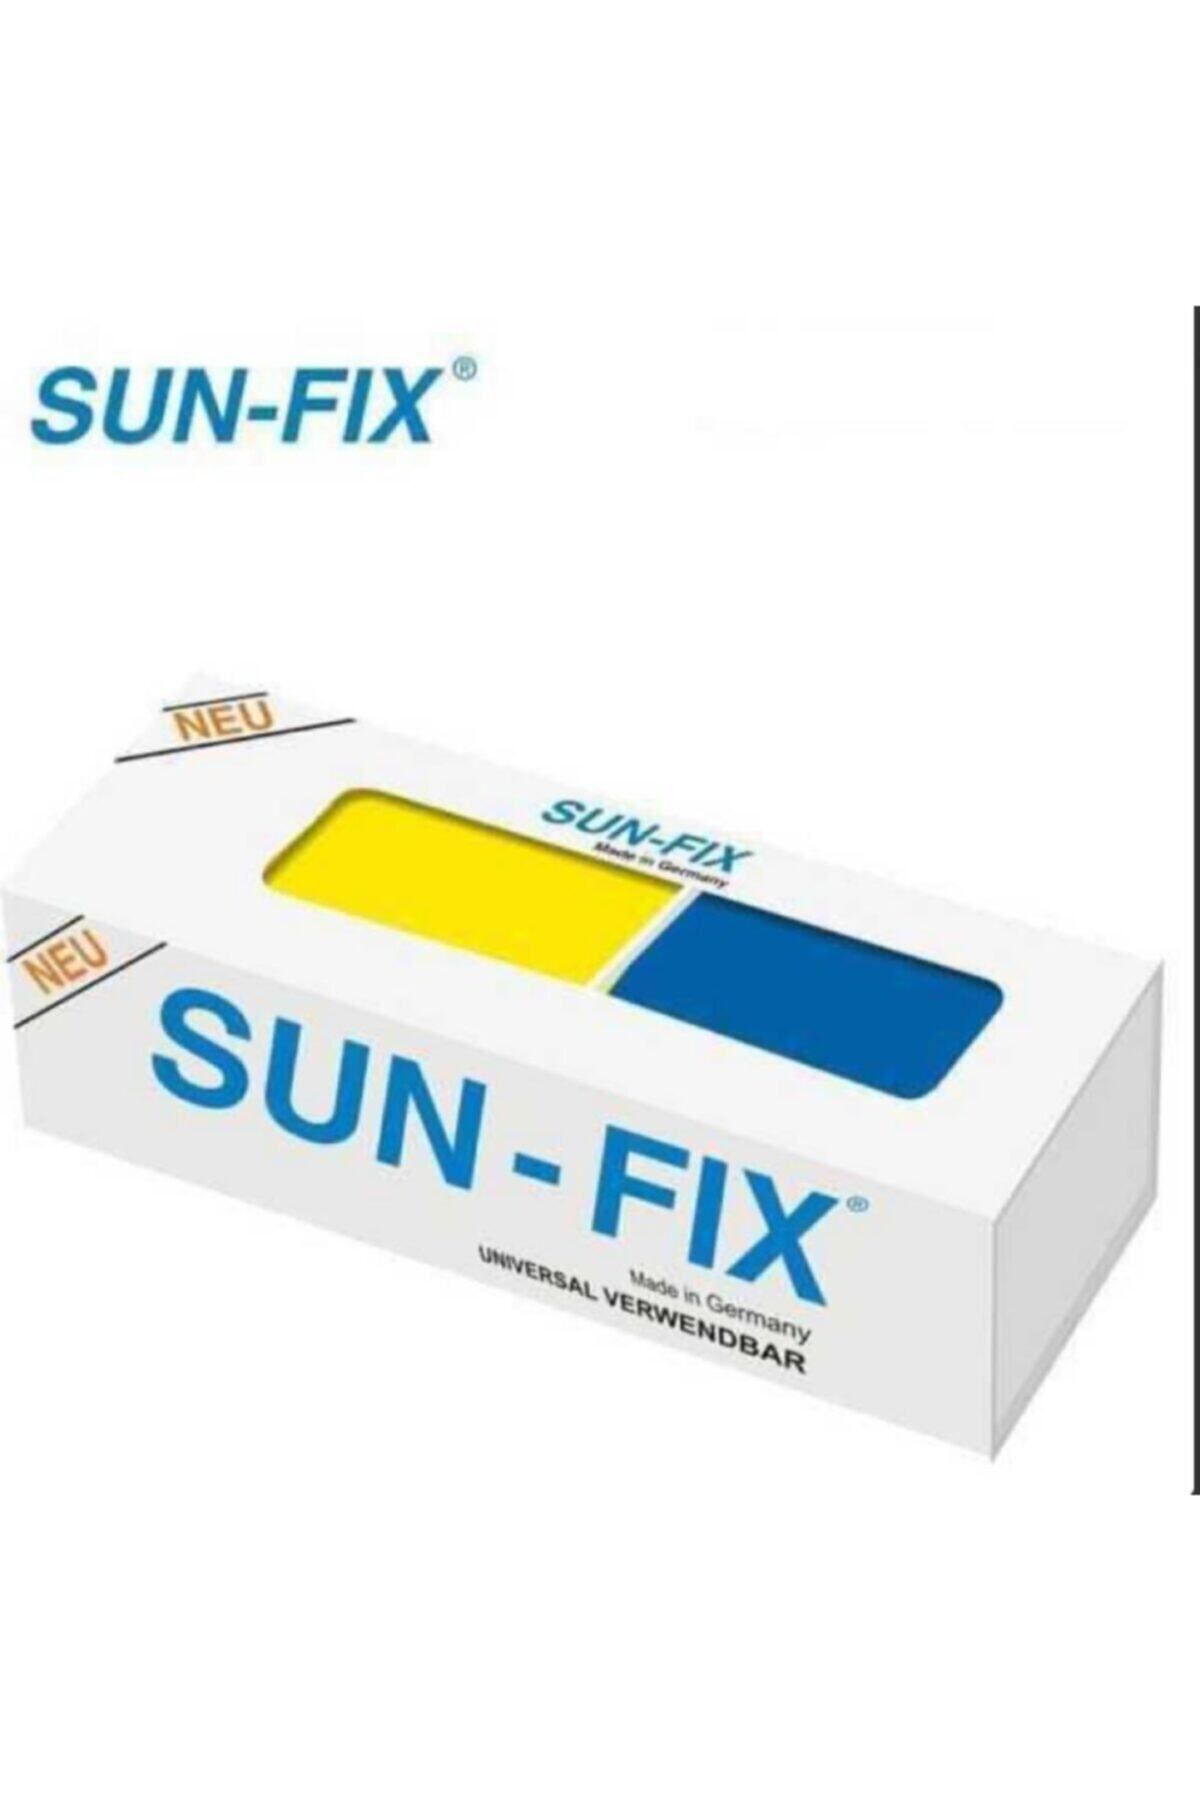 Sun-Fix Sunfix Universal Macun Kaynak 40 gr